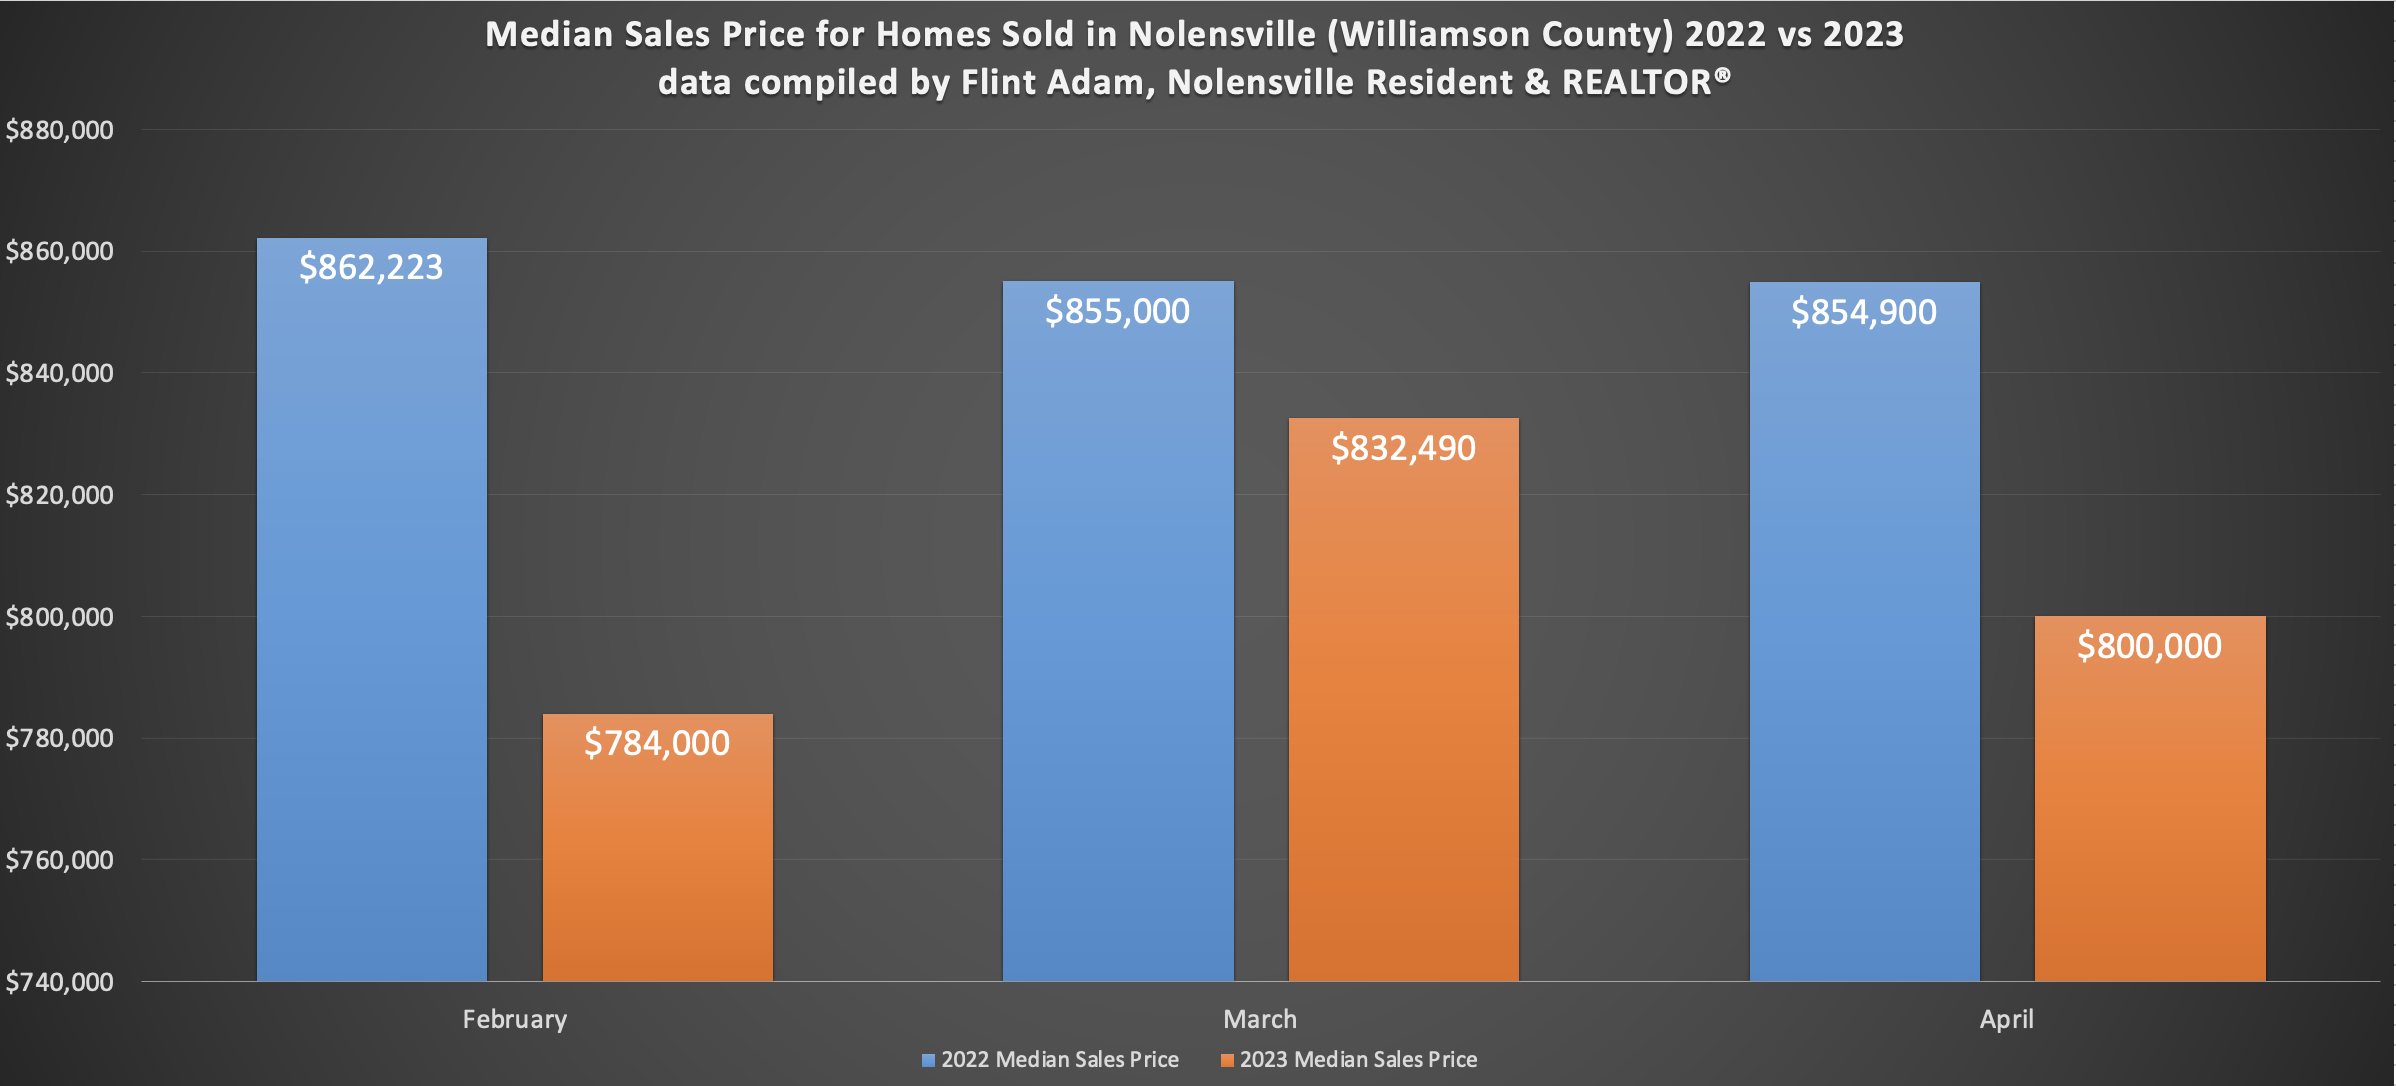 Median Sales Price of a Nolensville Home - 2022 vs 2023 - April 2023 data